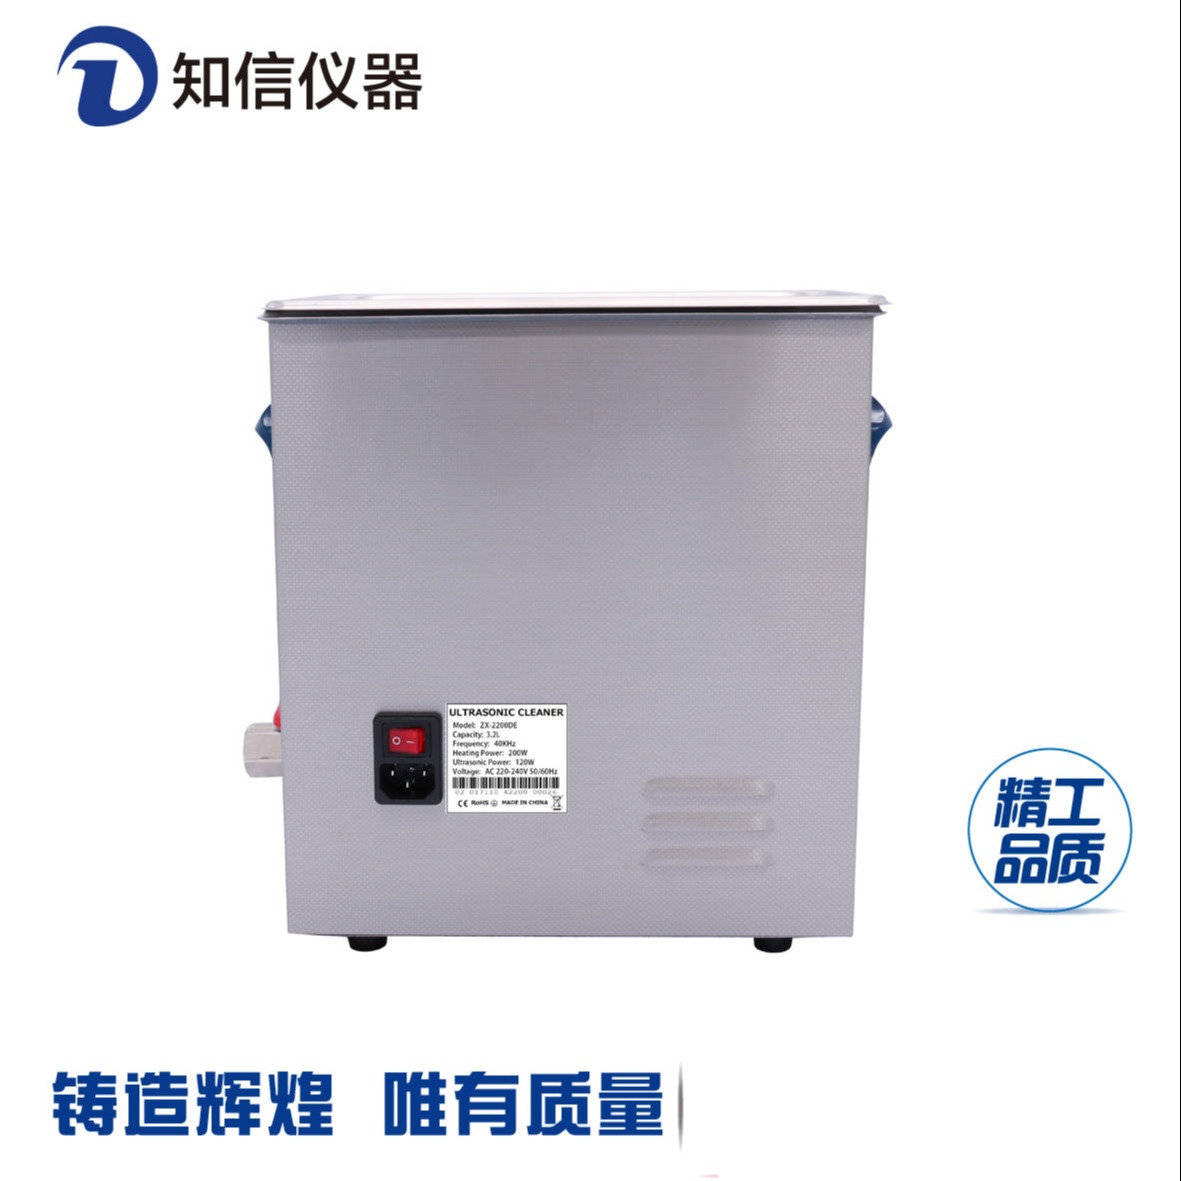 实验室超声波清洗器 超声波清洗机上海知信 ZX-3200DE单频6.8L3